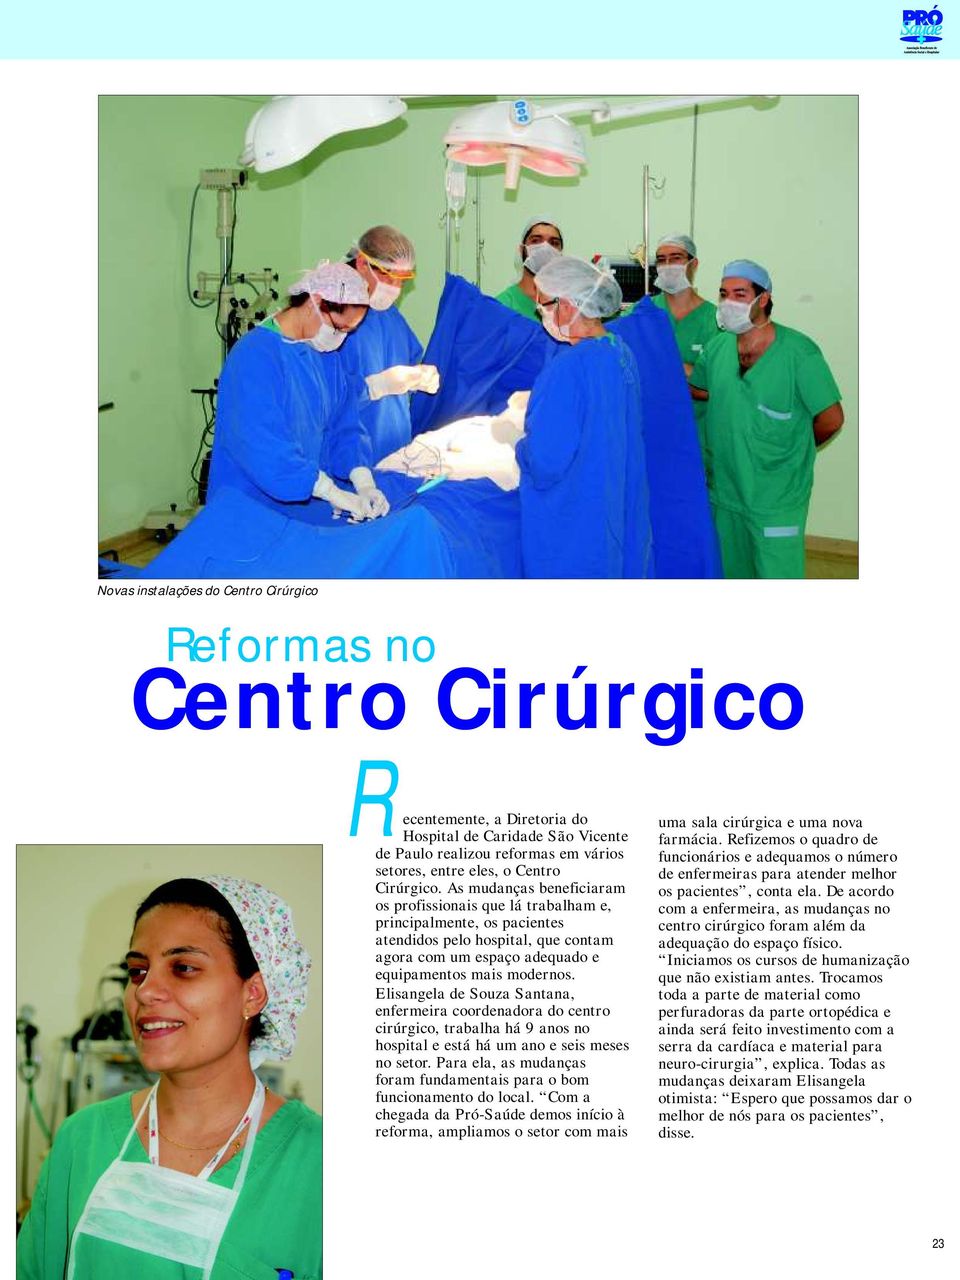 Elisangela de Souza Santana, enfermeira coordenadora do centro cirúrgico, trabalha há 9 anos no hospital e está há um ano e seis meses no setor.